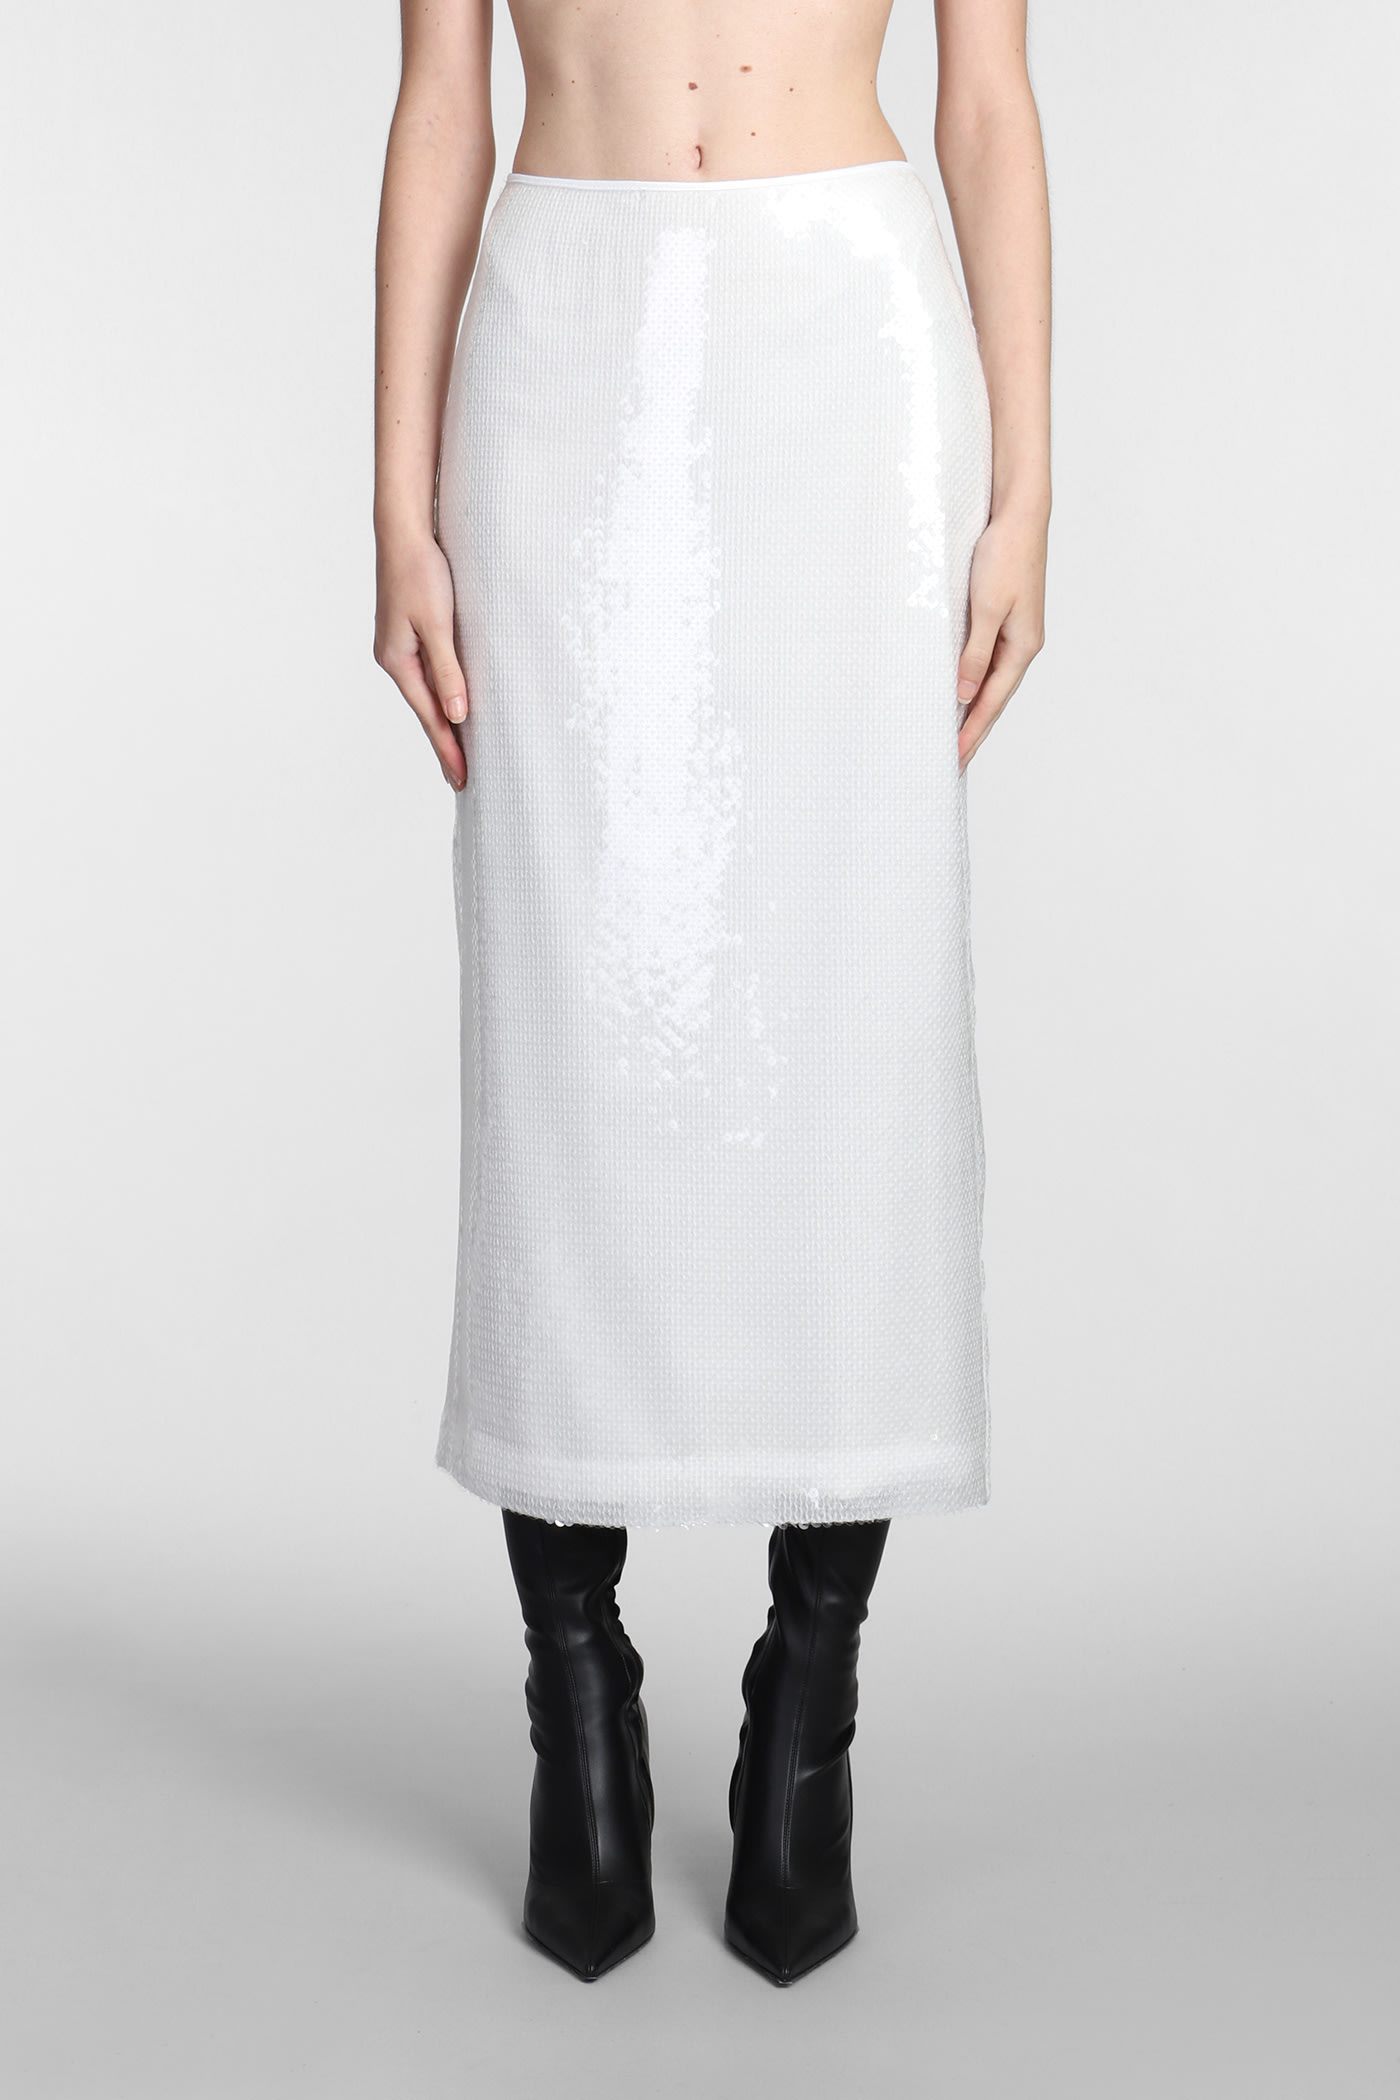 Skirt In White Polyester